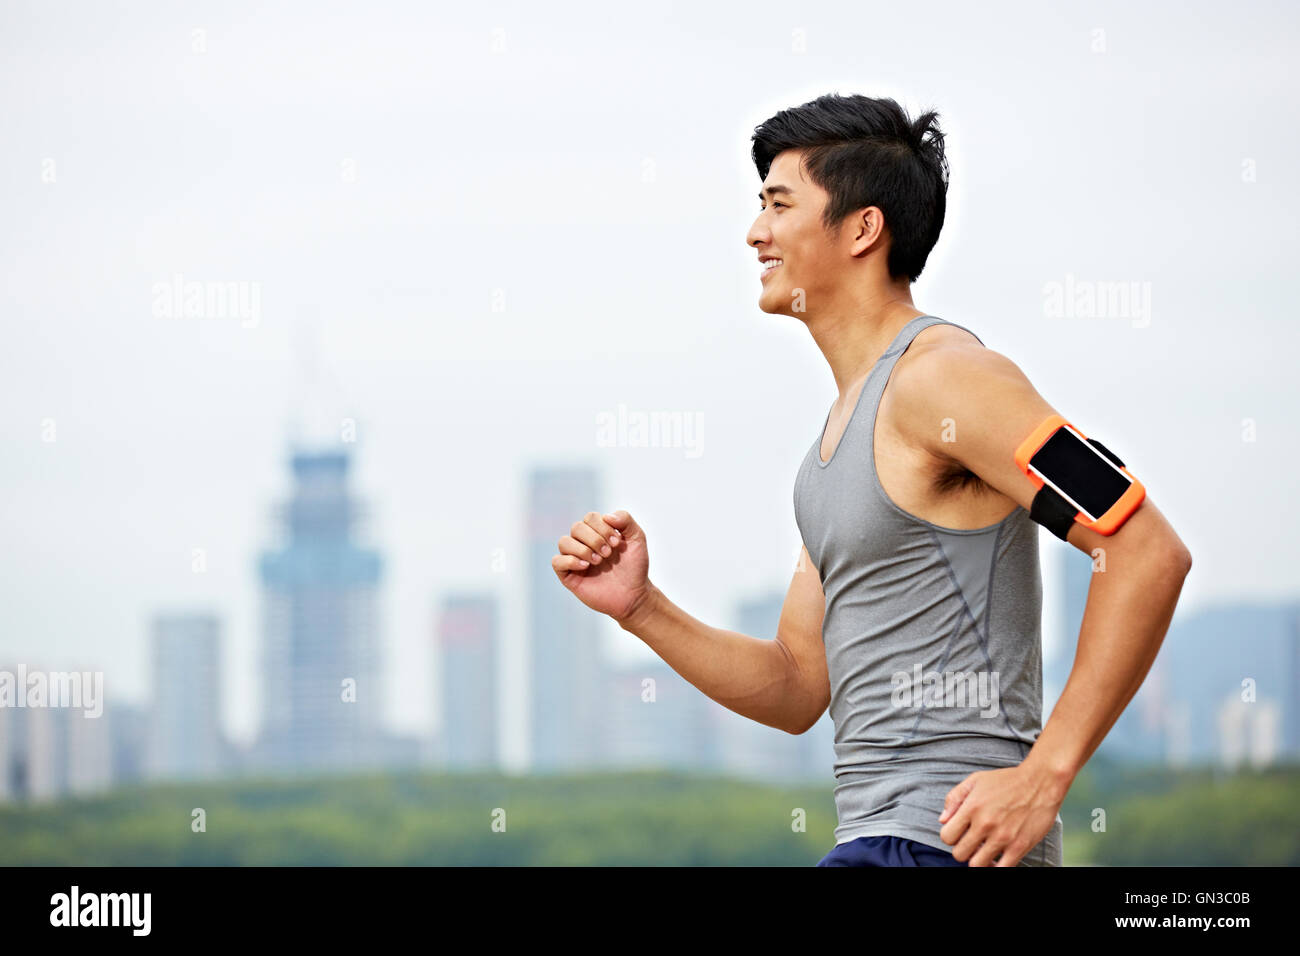 junge asiatische männliche Jogger mit Fitness-Tracker, um mit Skyline im Hintergrund läuft arm befestigt. Stockfoto